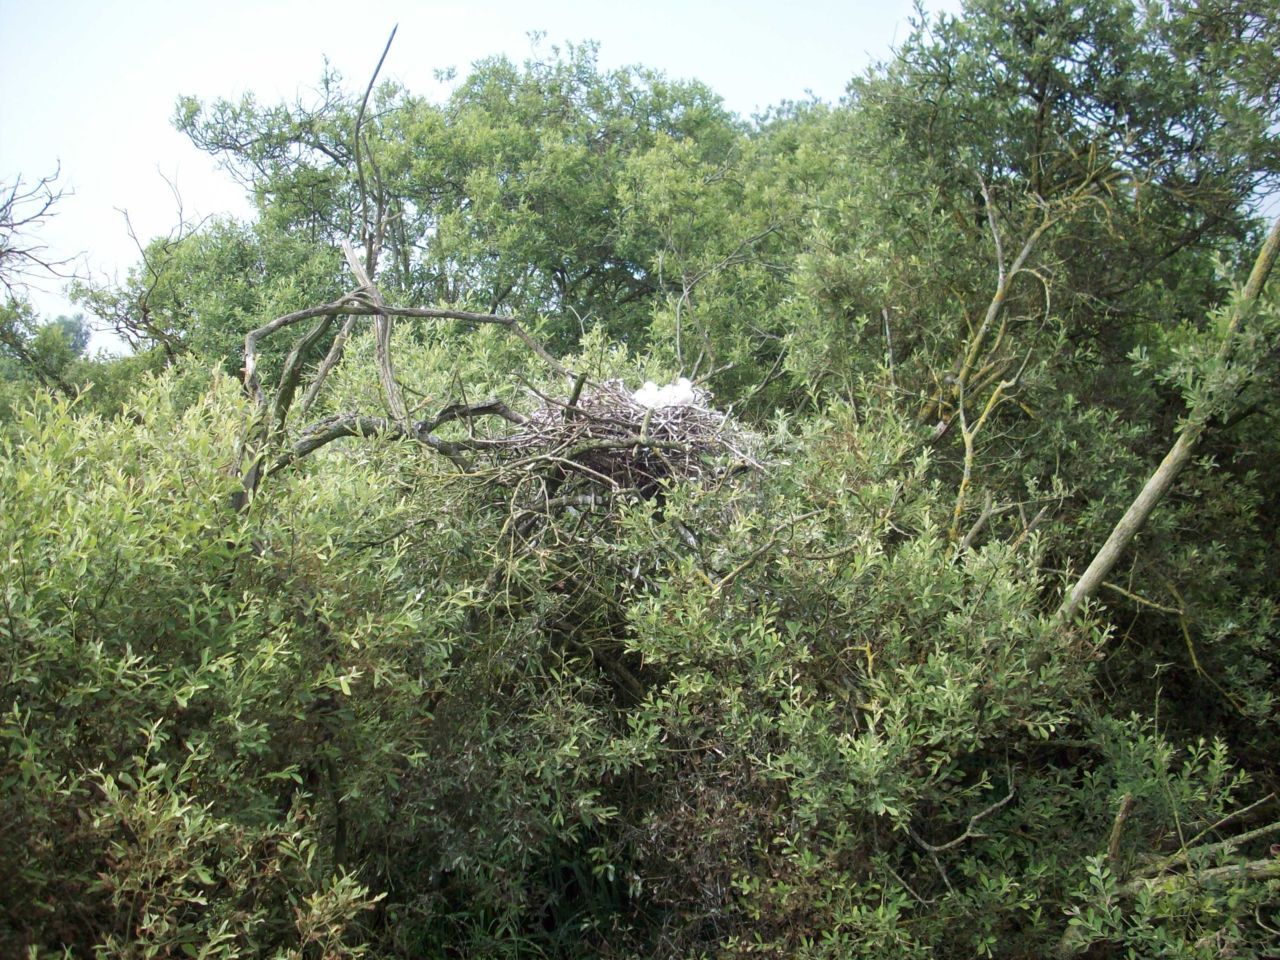 De Lepelaars kozen voor hun nesten moeilijk bereikbare locaties uit, hoog en droog en veilig voor grondpredatoren (foto: Guido Vandenbroucke)